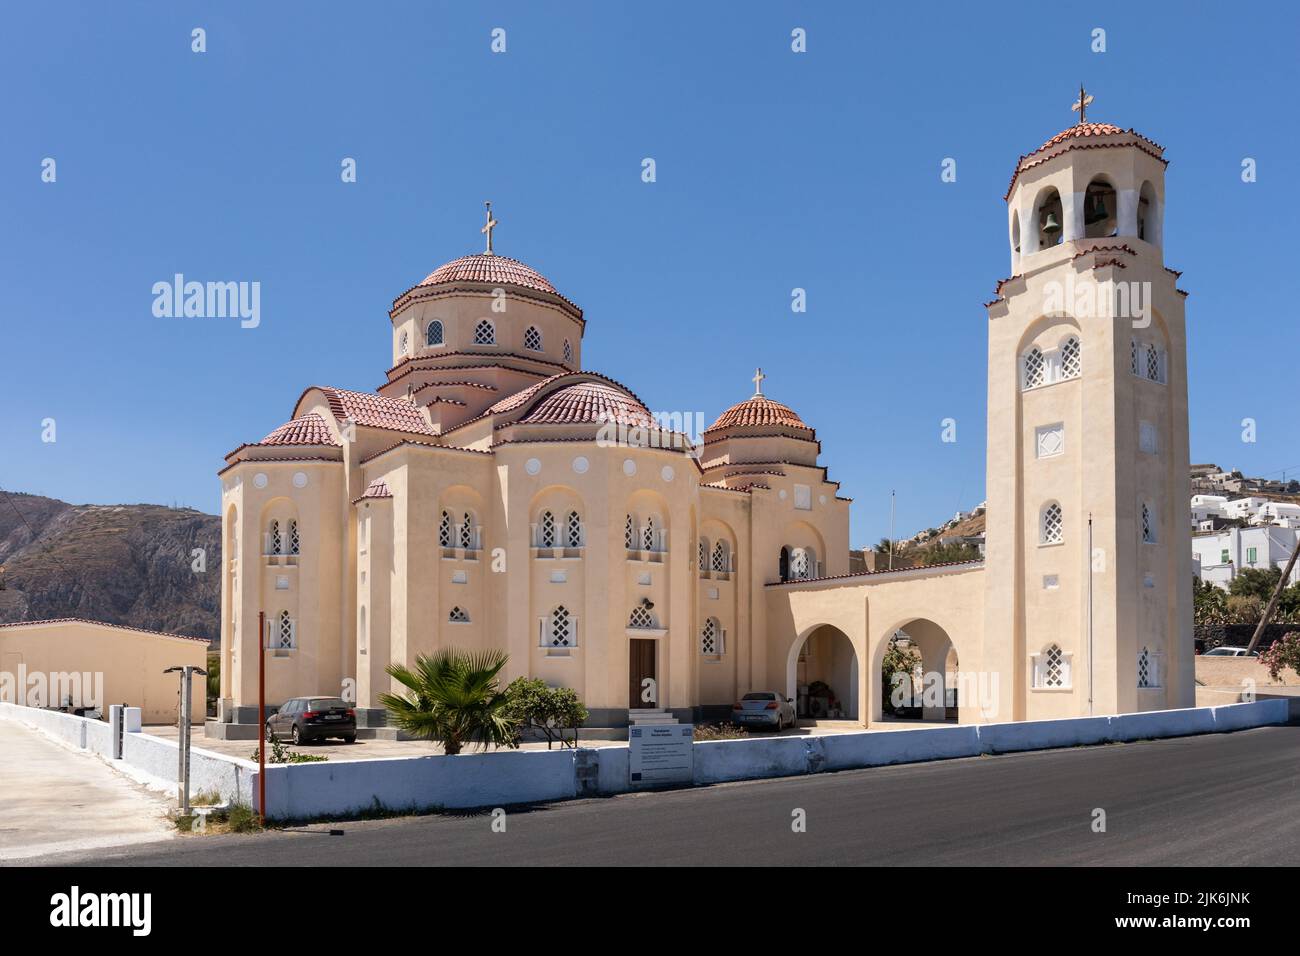 La impresionante iglesia de Agios Charalambos es una de las más grandes de Santorini, Exo Gonia, Santorini, islas Cícladas, Grecia, Europa Foto de stock